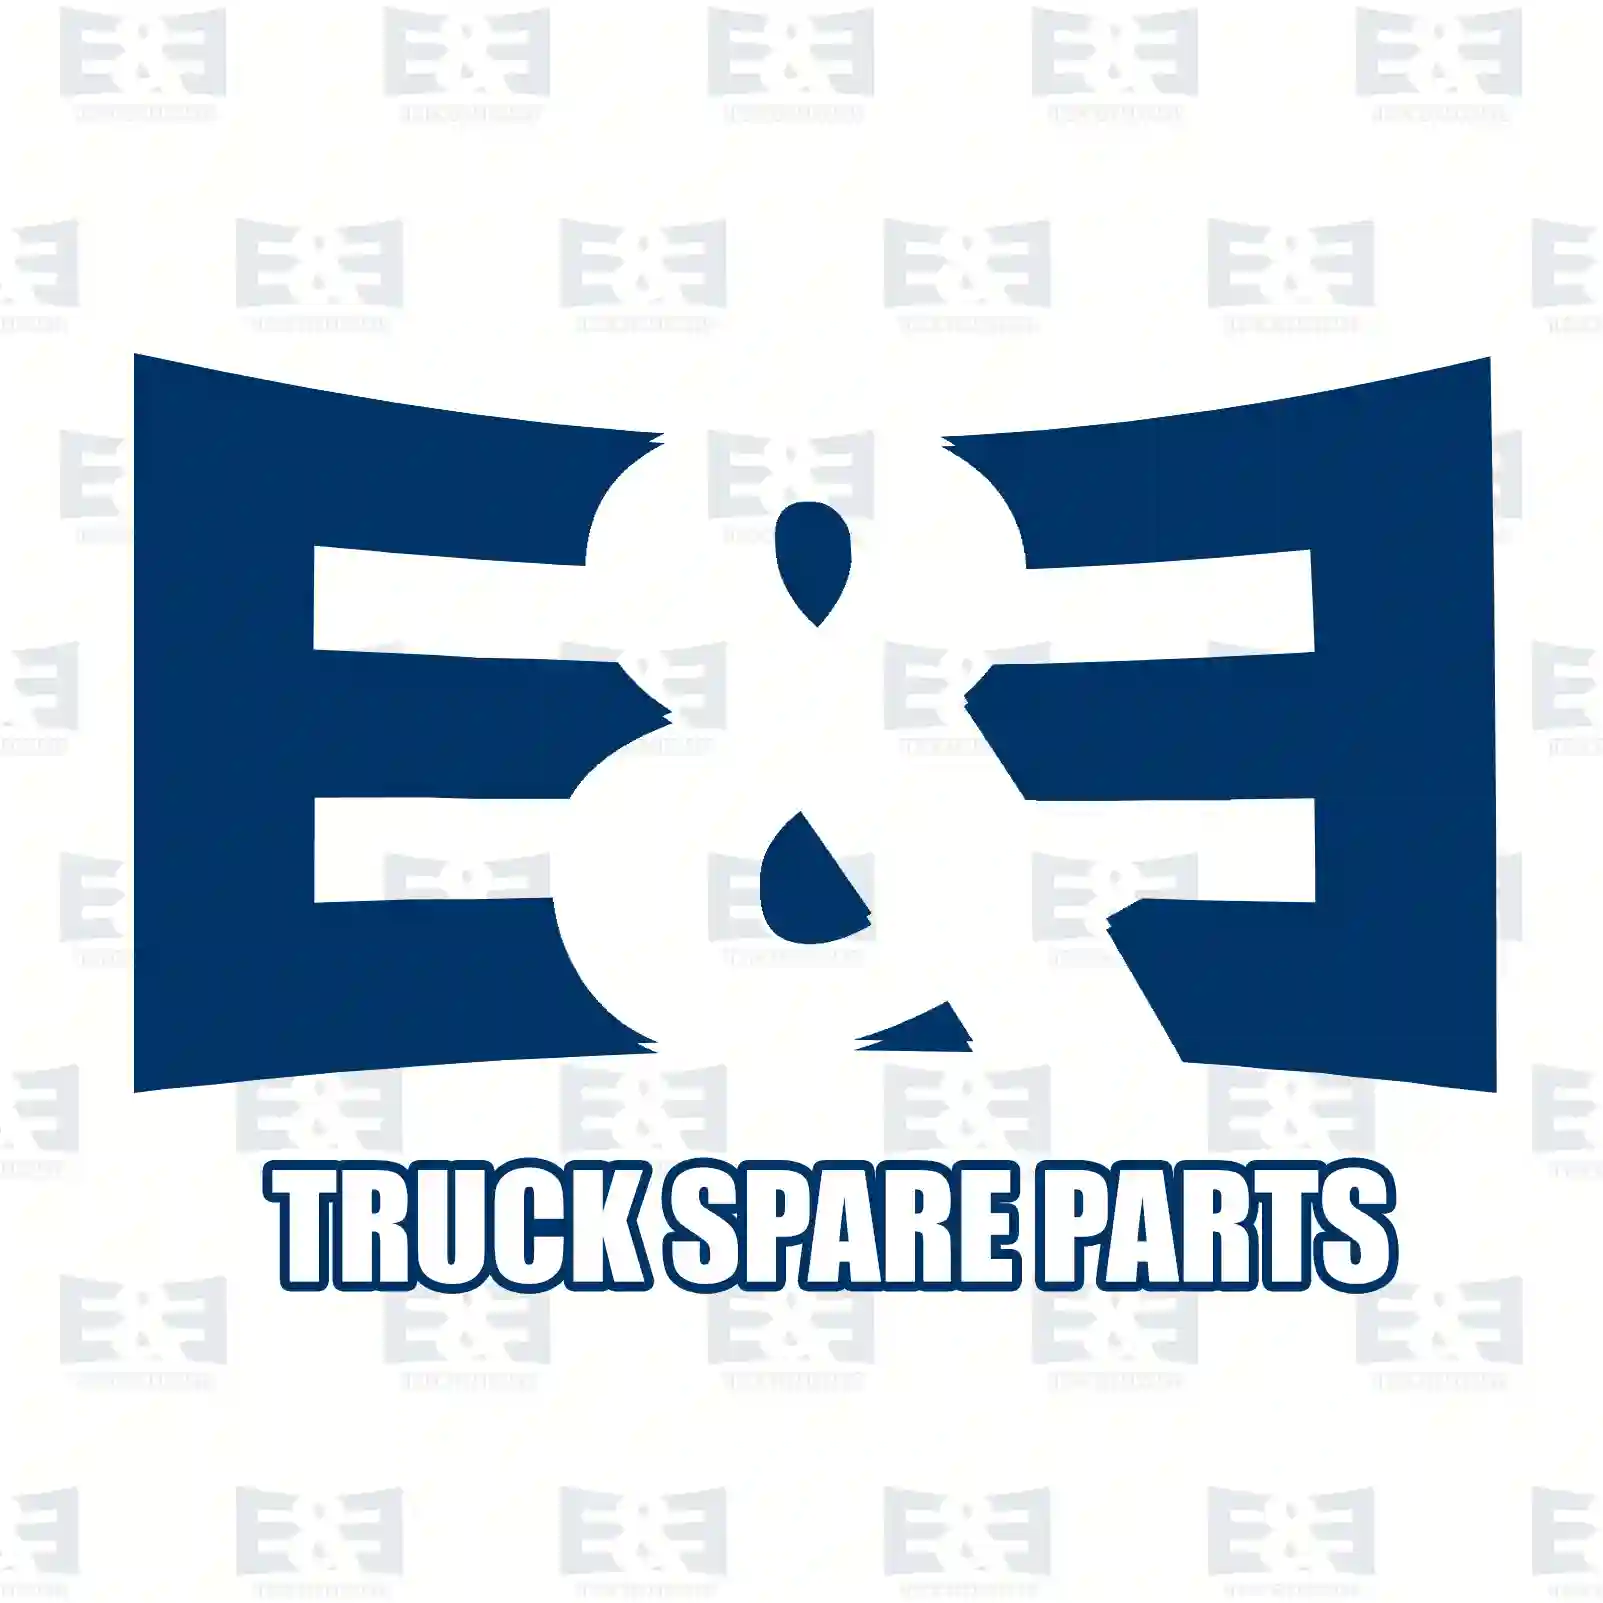 Trailer brake valve, 2E2293682, 0865622, 865622, F004555 ||  2E2293682 E&E Truck Spare Parts | Truck Spare Parts, Auotomotive Spare Parts Trailer brake valve, 2E2293682, 0865622, 865622, F004555 ||  2E2293682 E&E Truck Spare Parts | Truck Spare Parts, Auotomotive Spare Parts